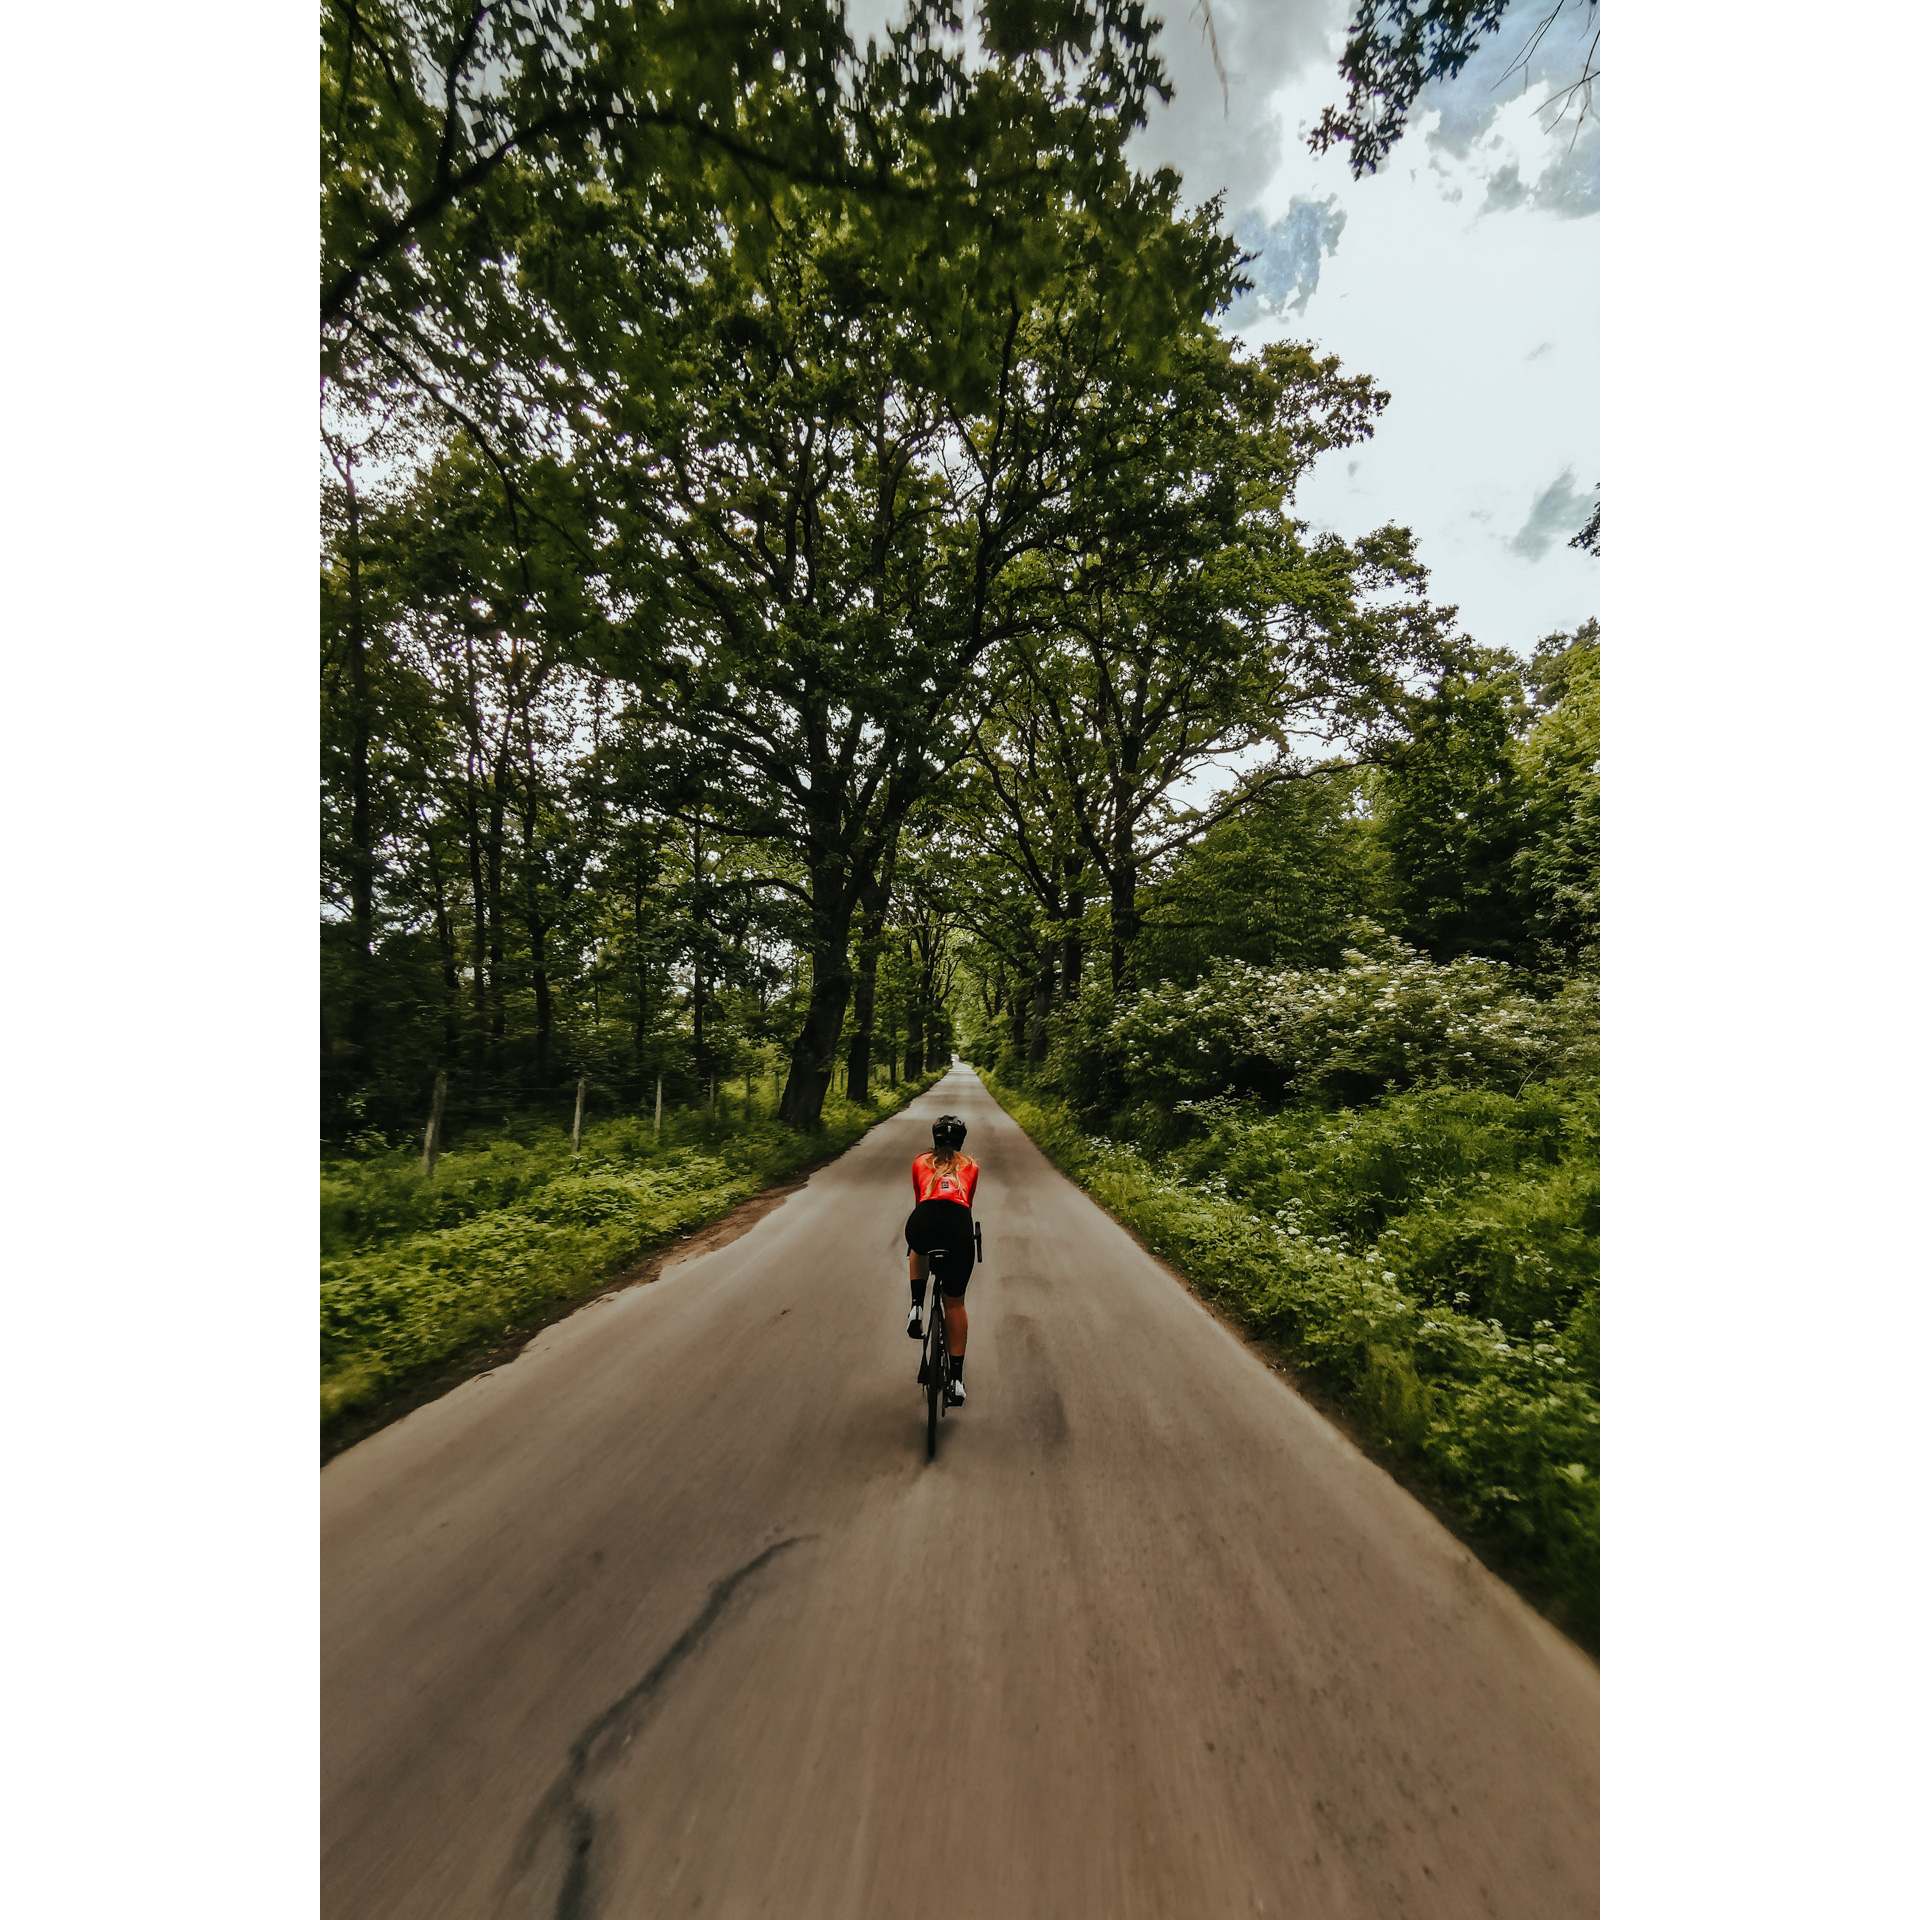 Rowerzystka w czerwono-czarnym stroju jadąca drogą asfaltową w otoczeniu bujnej roślinności i drzew z zielonymi liśćmi